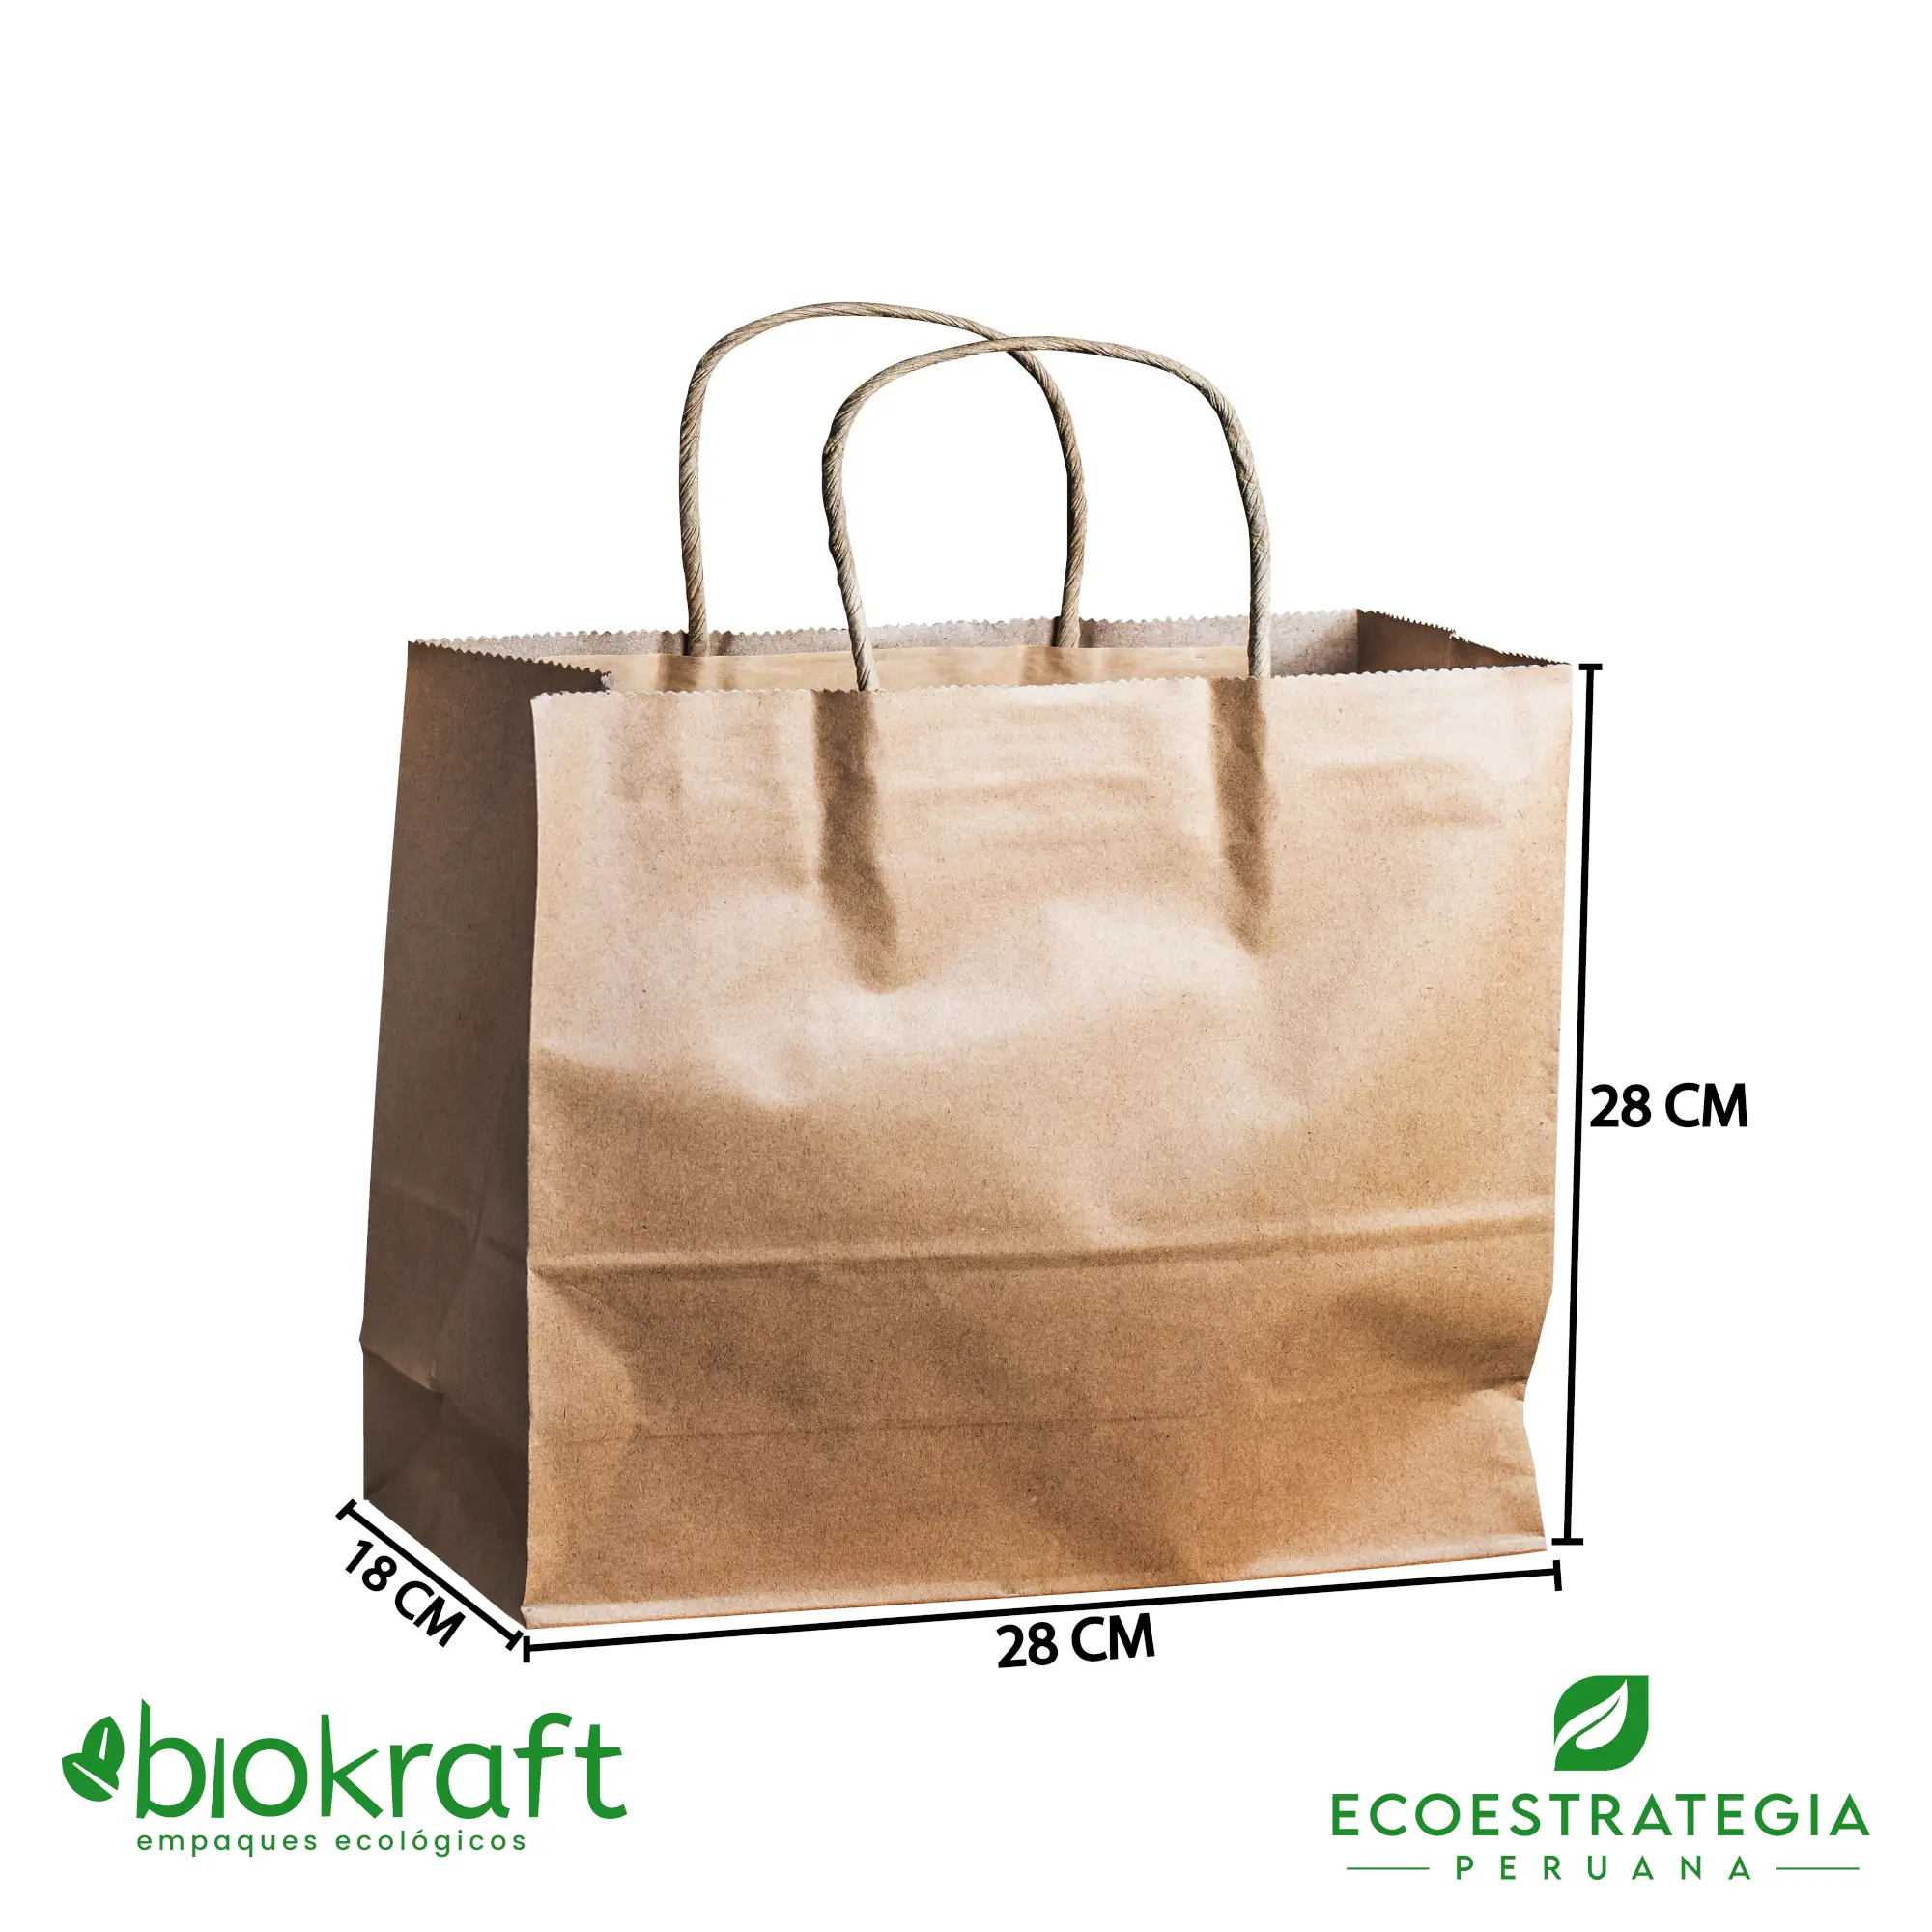 Esta bolsa de papel Kraft tiene un grosor de 80 gr. Bolsa biodegradable de excelente gramaje y medida, ideal para comidas y productos ligeros. Cotiza ahora tus bolsas Kraft con asa número 18